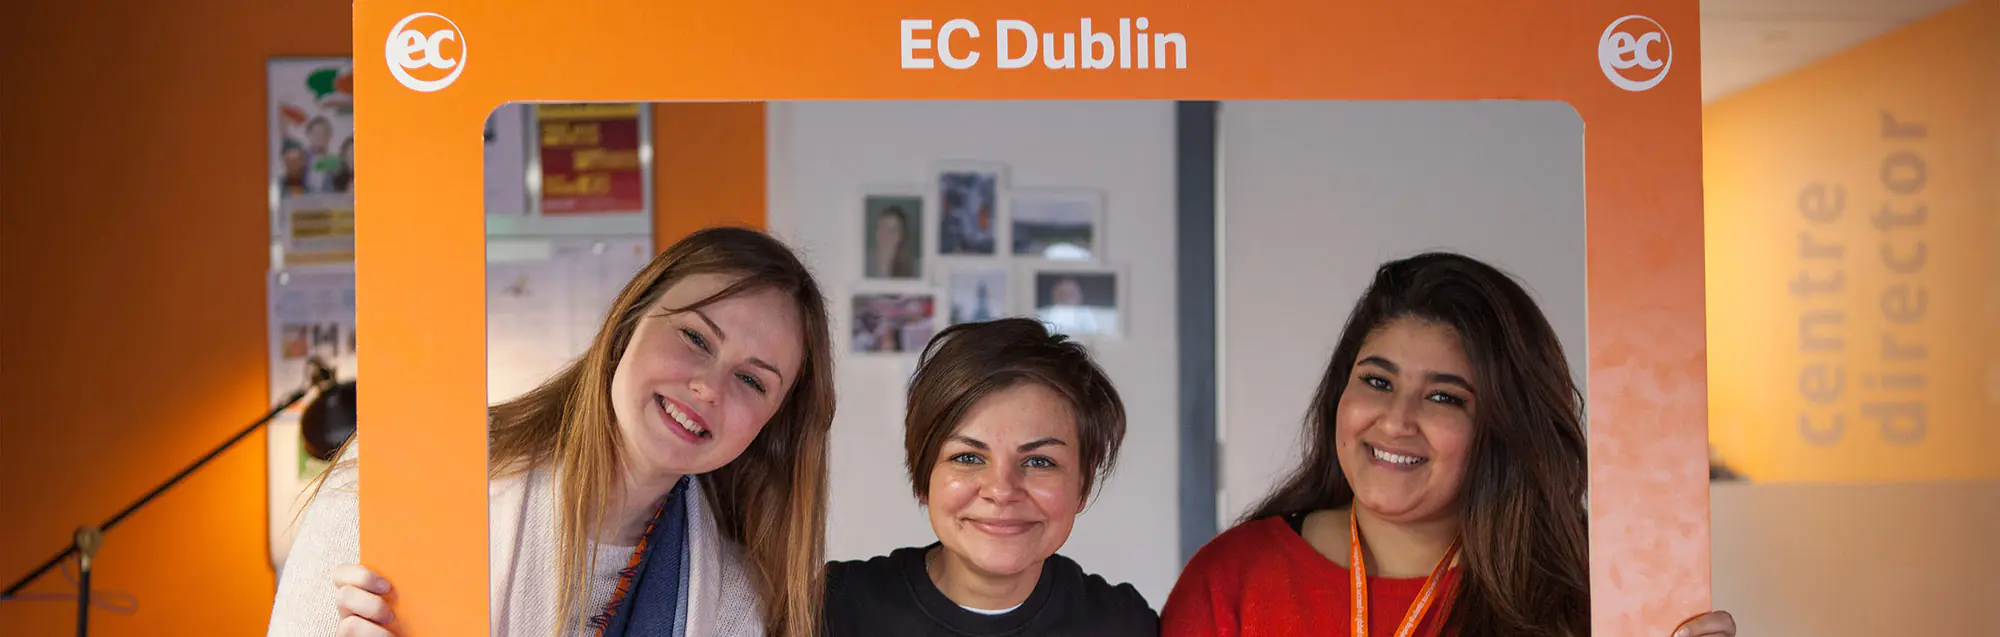 Programmi per studiare e lavorare di EC Dublin 30plus